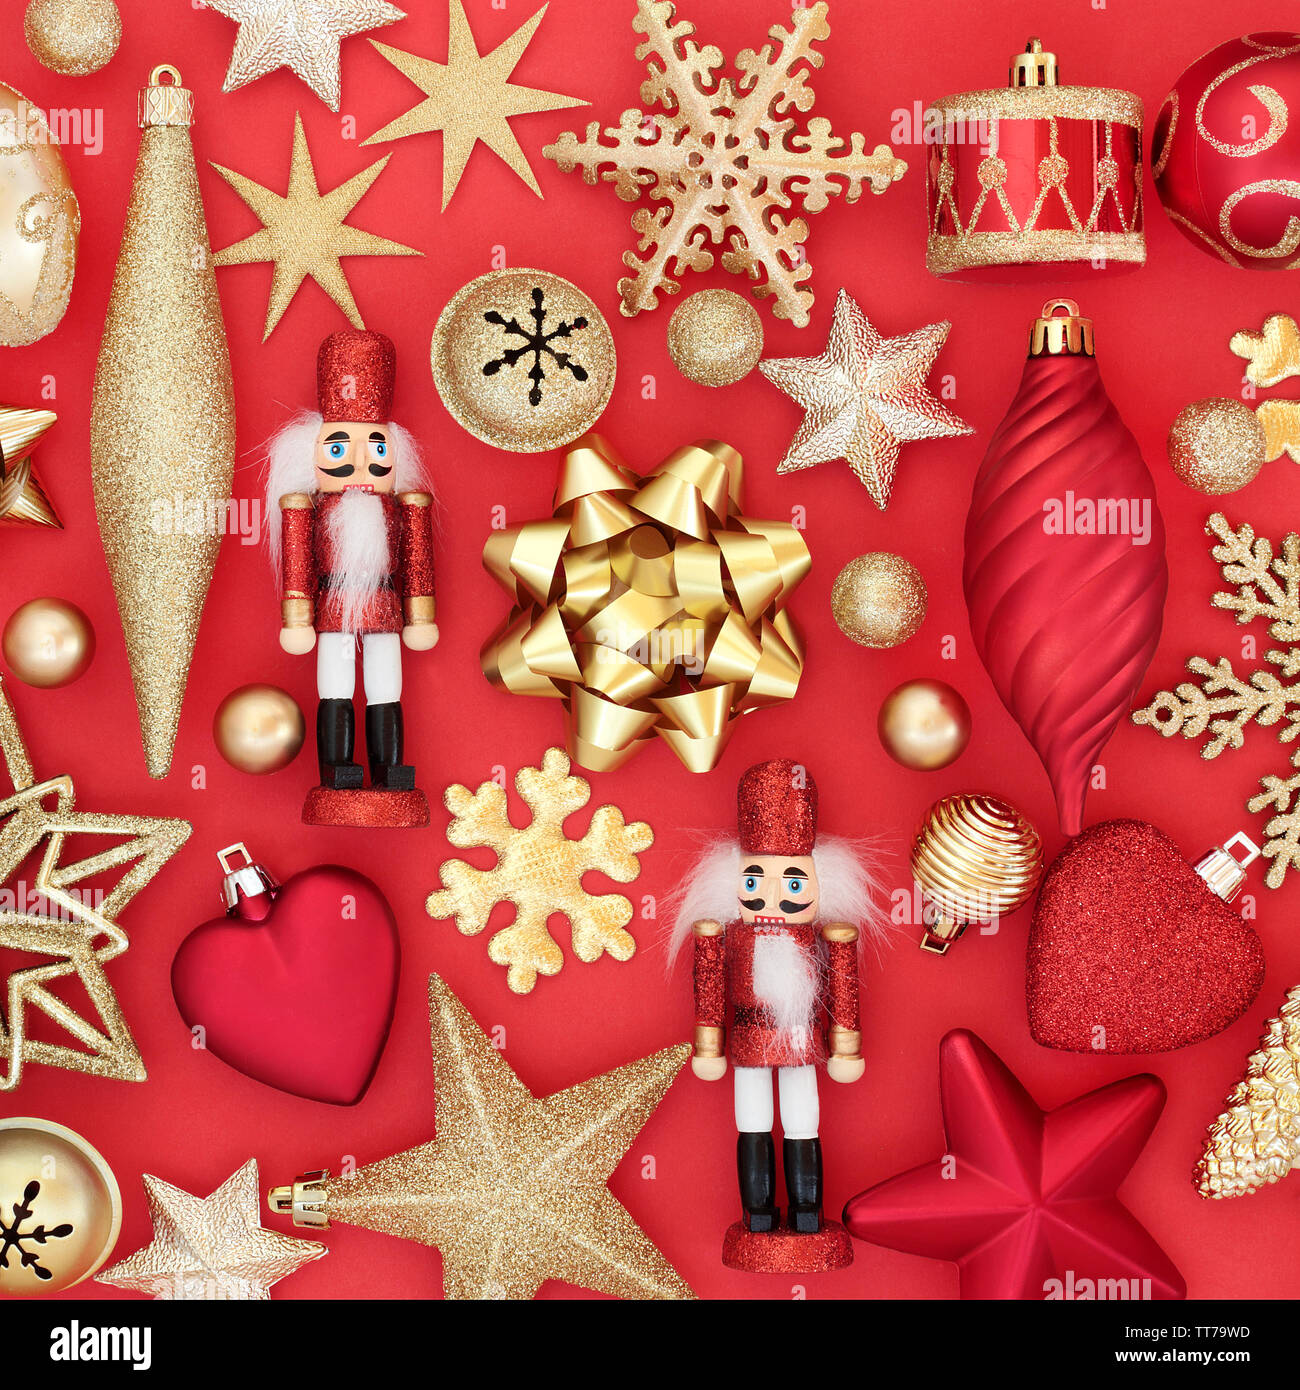 Boules de décoration d'arbres de Noël et de symboles sur fond rouge. Carte de vœux traditionnels pour les fêtes. Banque D'Images